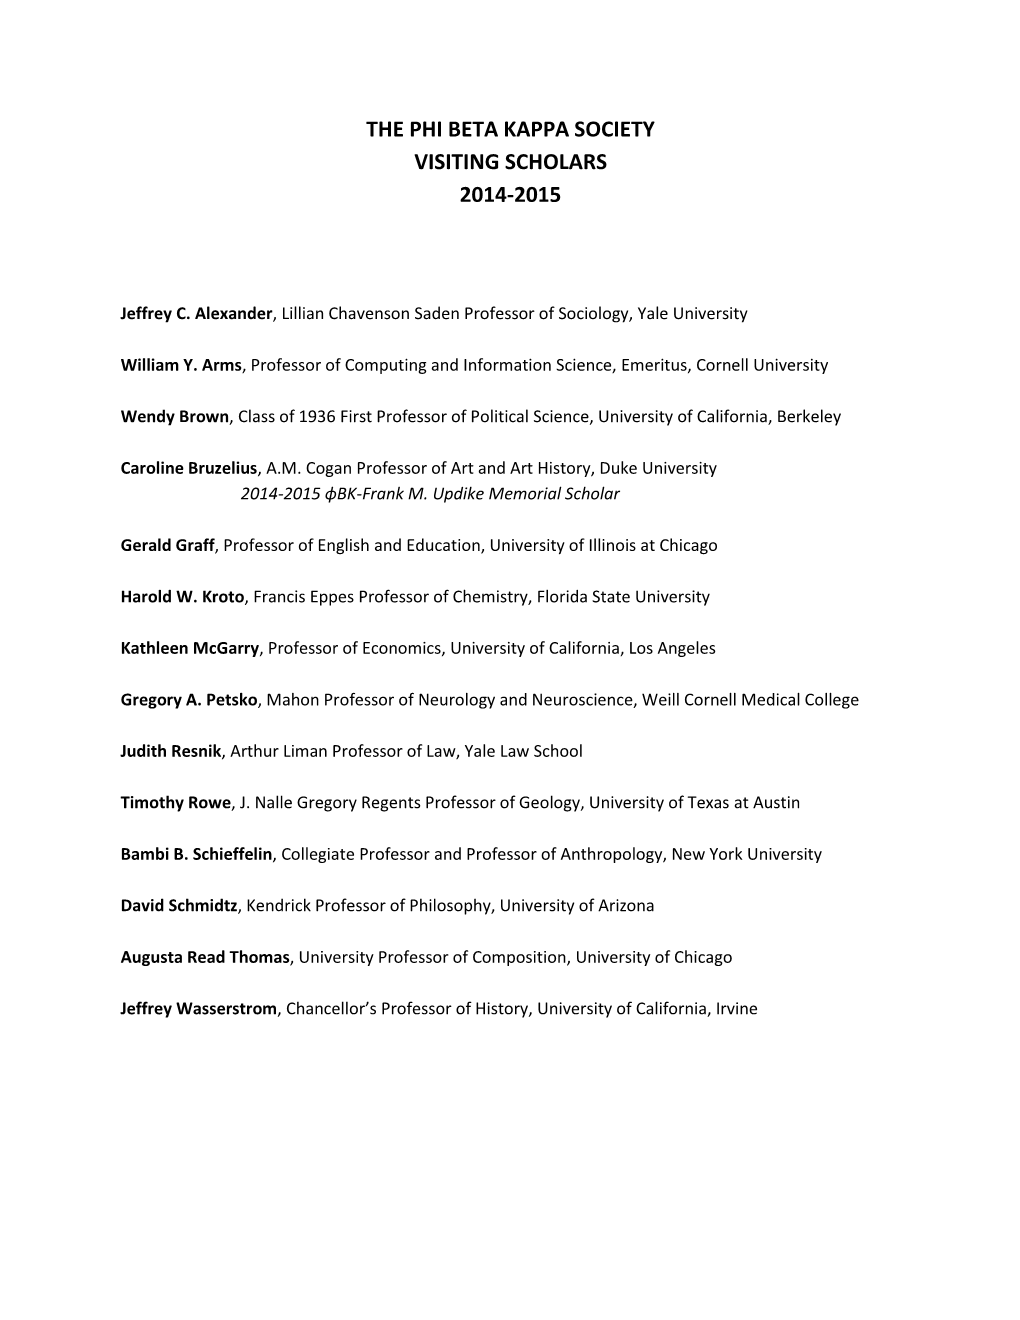 The Phi Beta Kappa Society Visiting Scholars 2014-2015